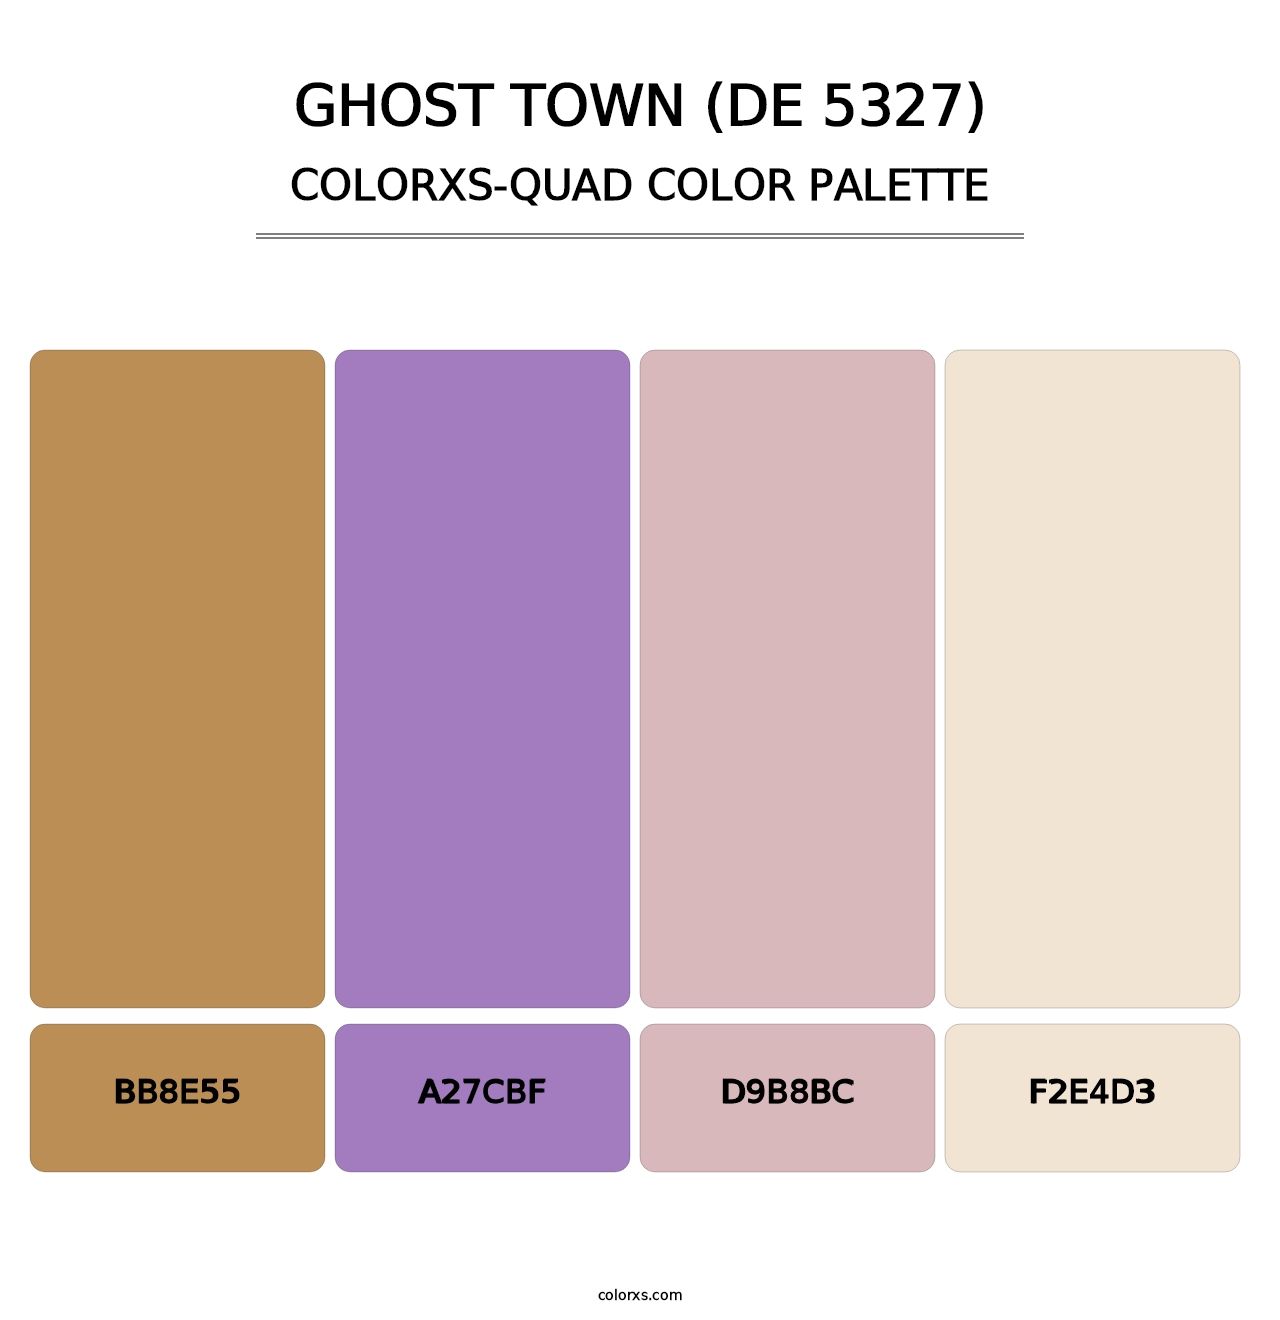 Ghost Town (DE 5327) - Colorxs Quad Palette